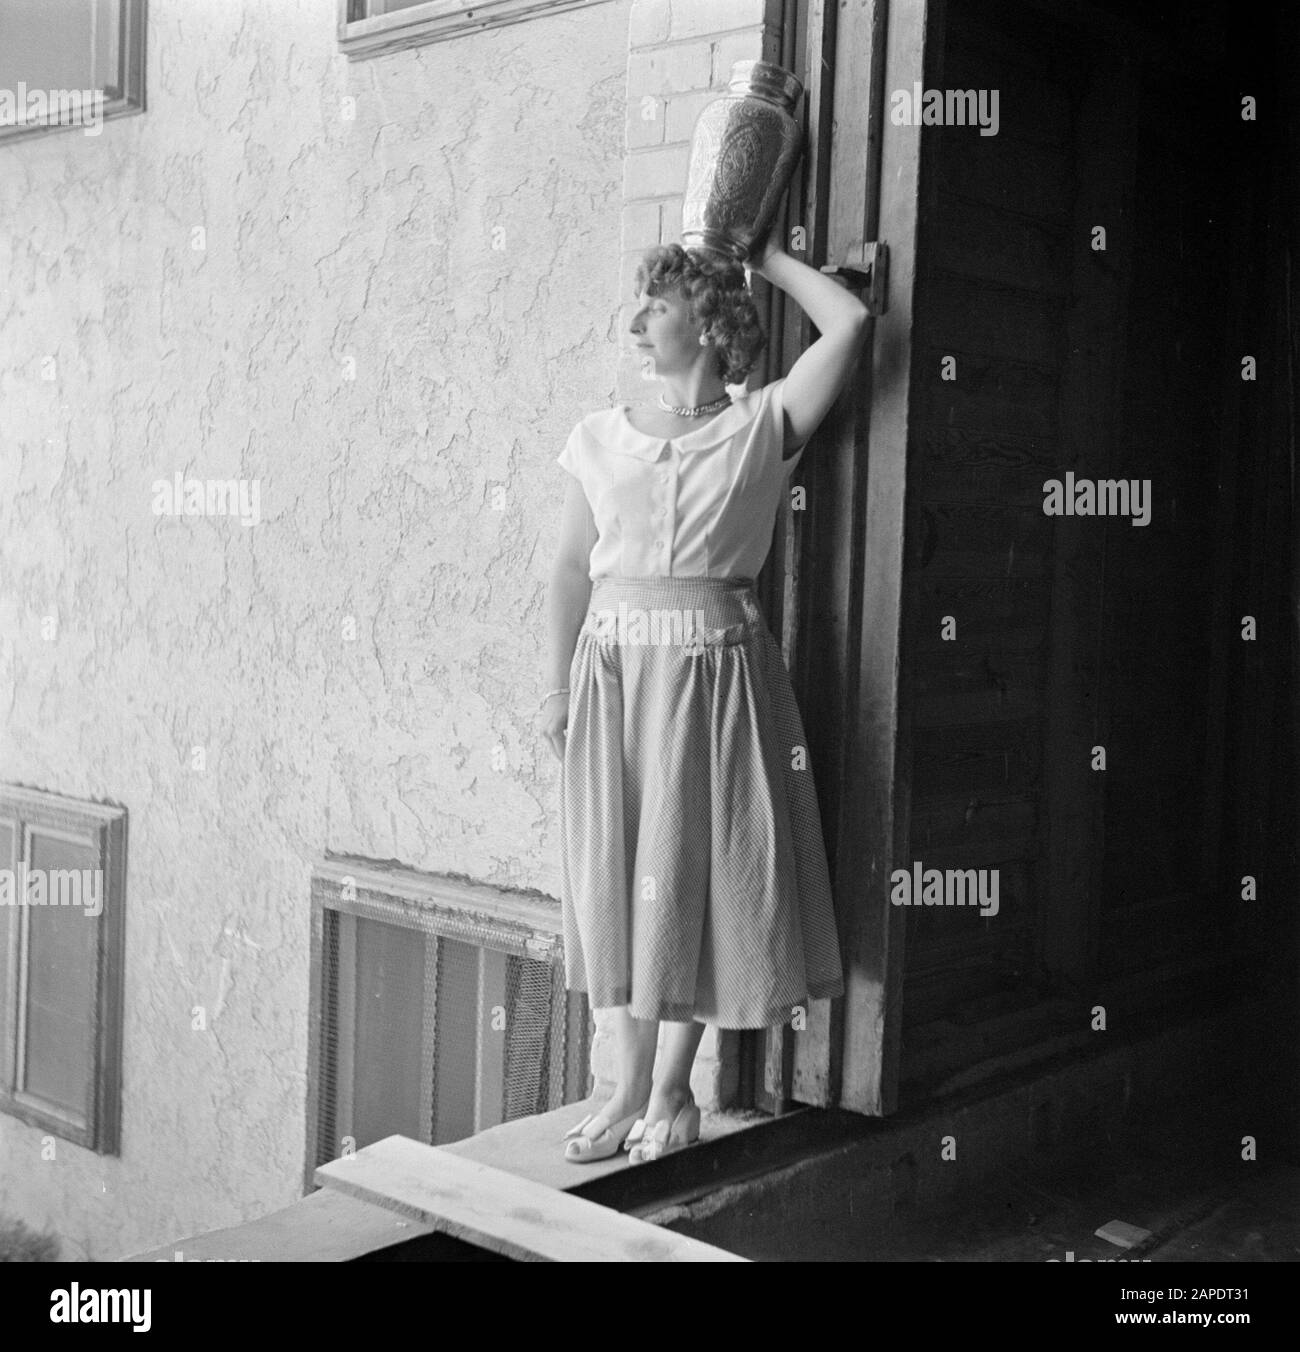 Israel 1948-1949 Beschreibung: Anonyme Frau posiert in stehender Position mit einer Metallvase auf dem Kopf an einer Wand vor einer Wohnung im Bau Datum: 1948 Ort: Israel Schlagwörter: Fotografien, Fotomodelle, posieren Stockfoto